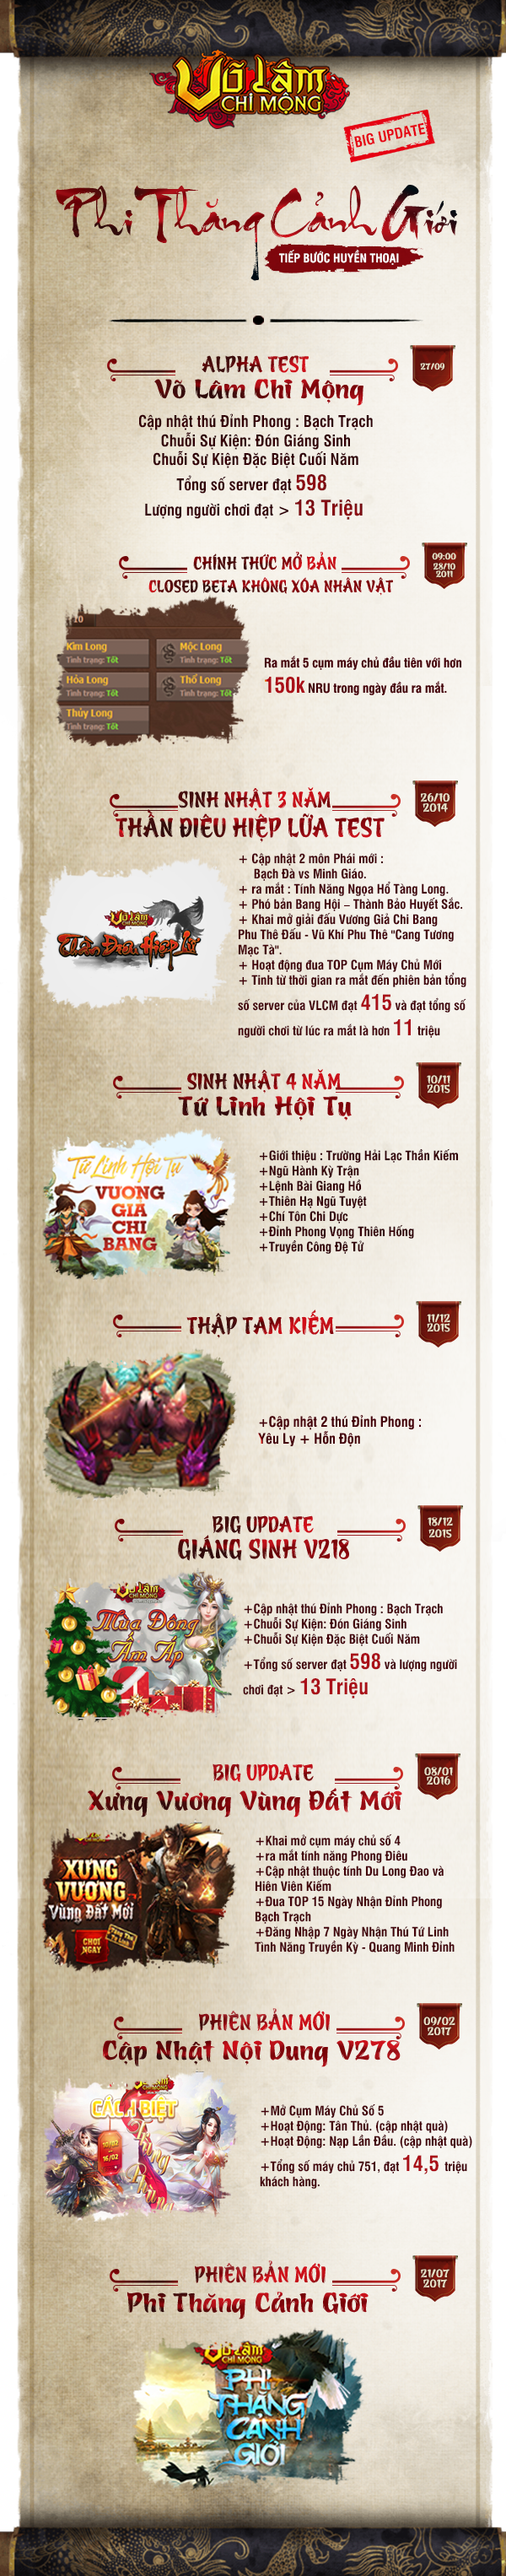 [Infographic]Mừng sinh nhật 6 tuổi - Võ Lâm Chi Mộng trở thành một trong những webgame lão làng của Việt Nam